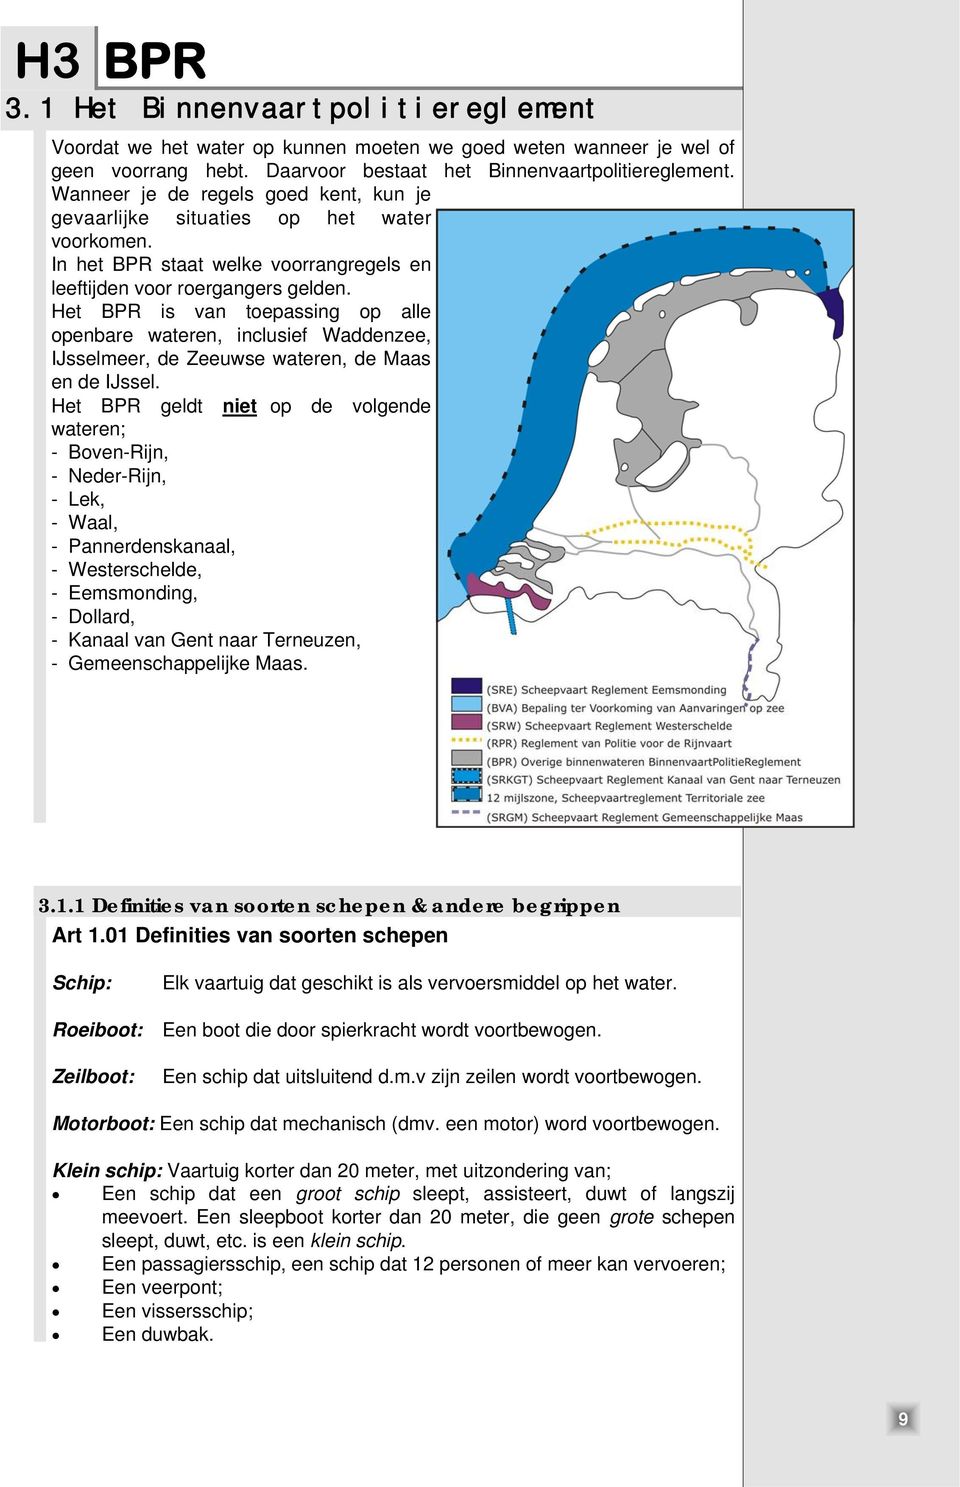 Het BPR is van toepassing op alle openbare wateren, inclusief Waddenzee, IJsselmeer, de Zeeuwse wateren, de Maas en de IJssel.